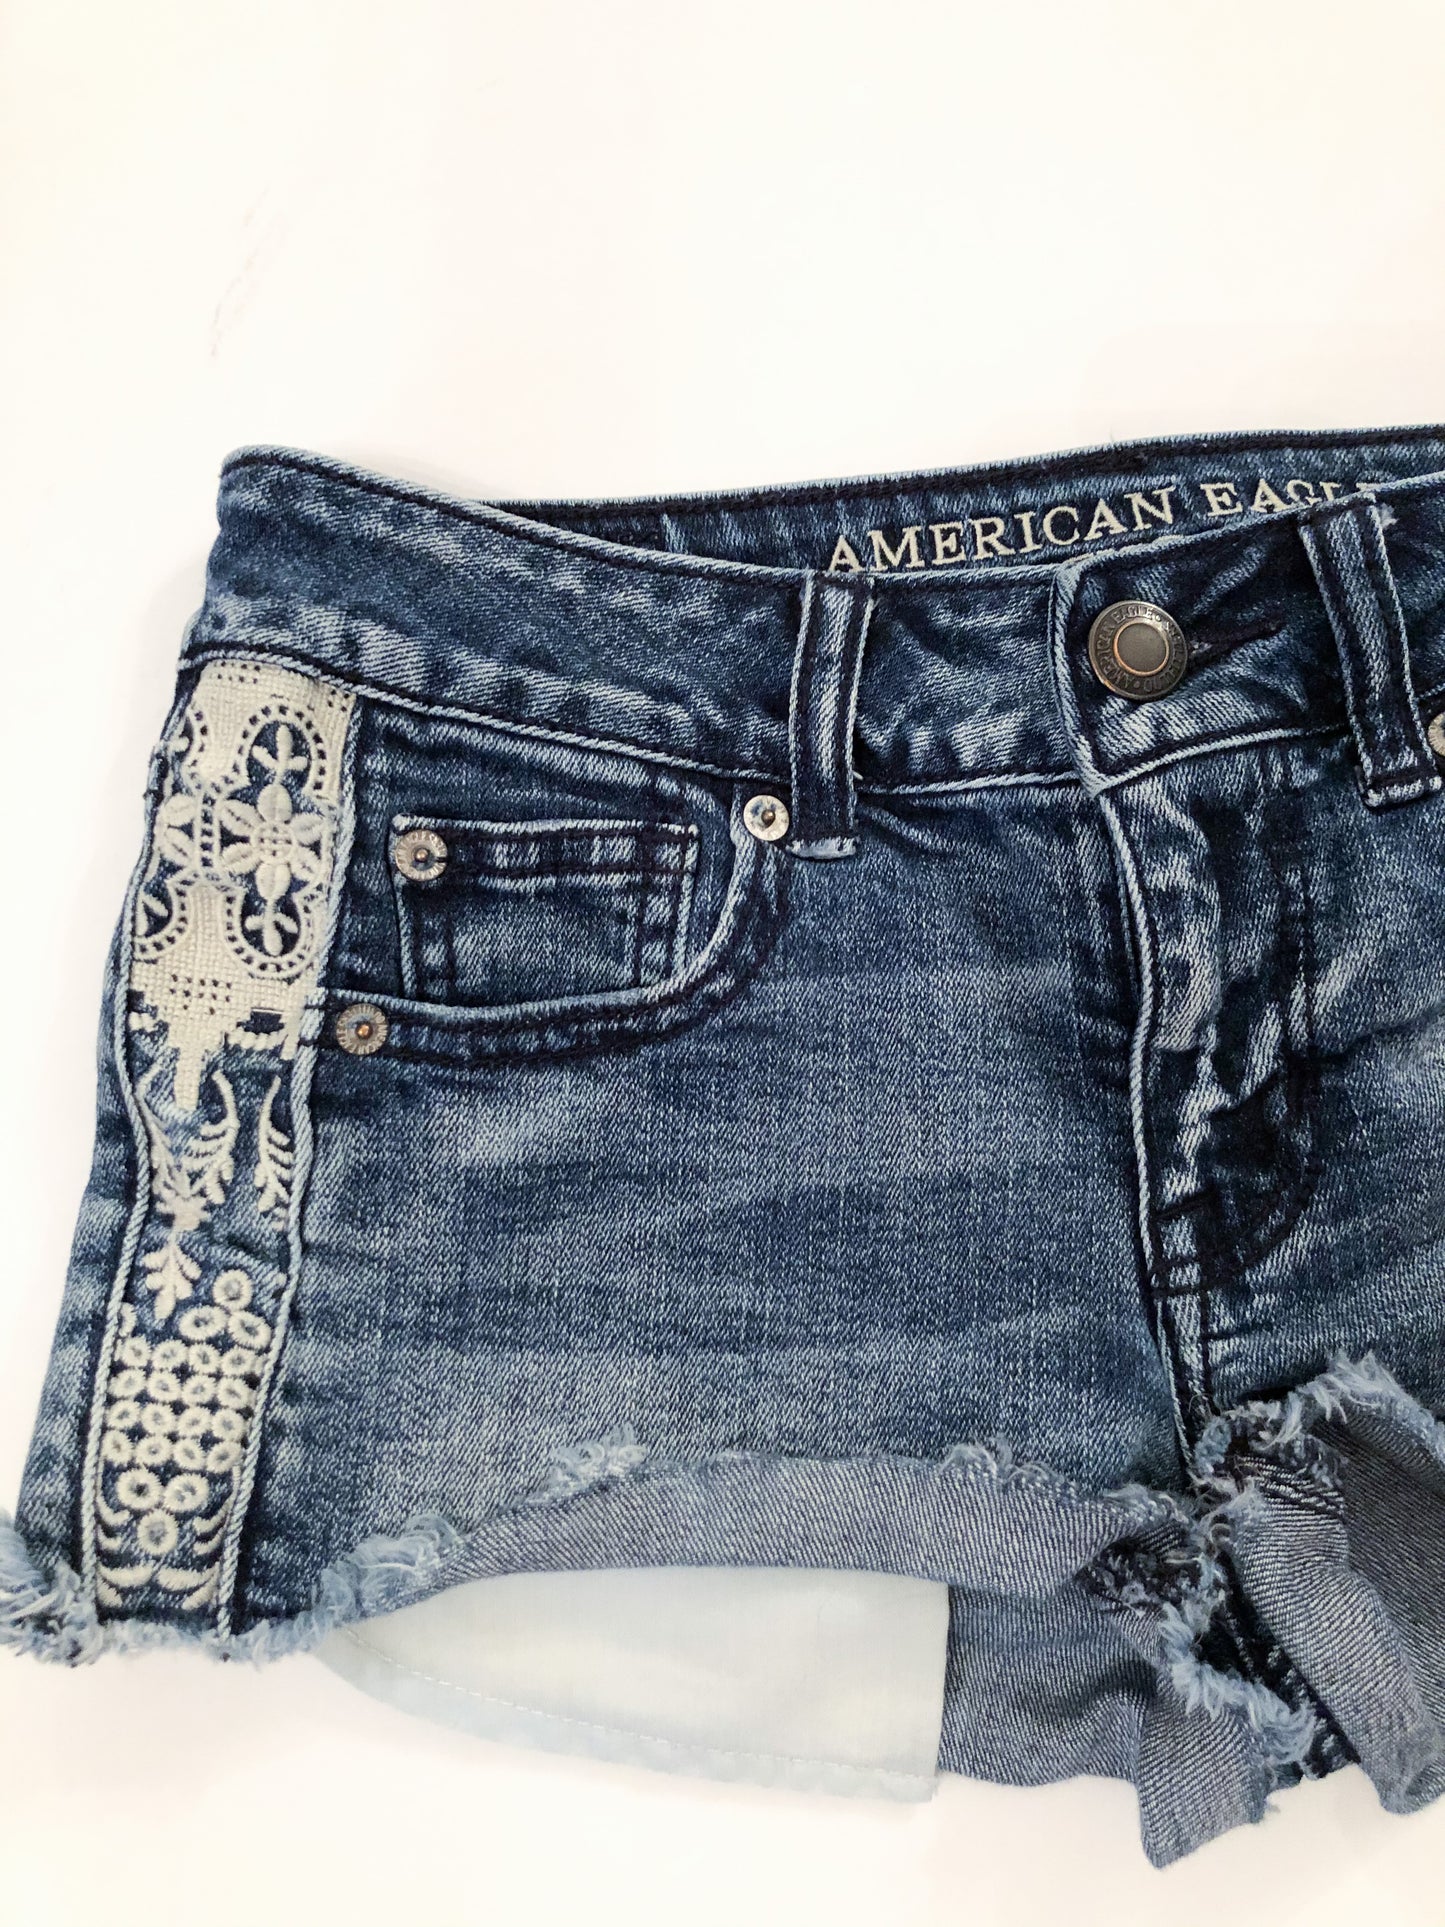 American Eagle Cutoff Lace Stretch Denim Shorts - Size 0